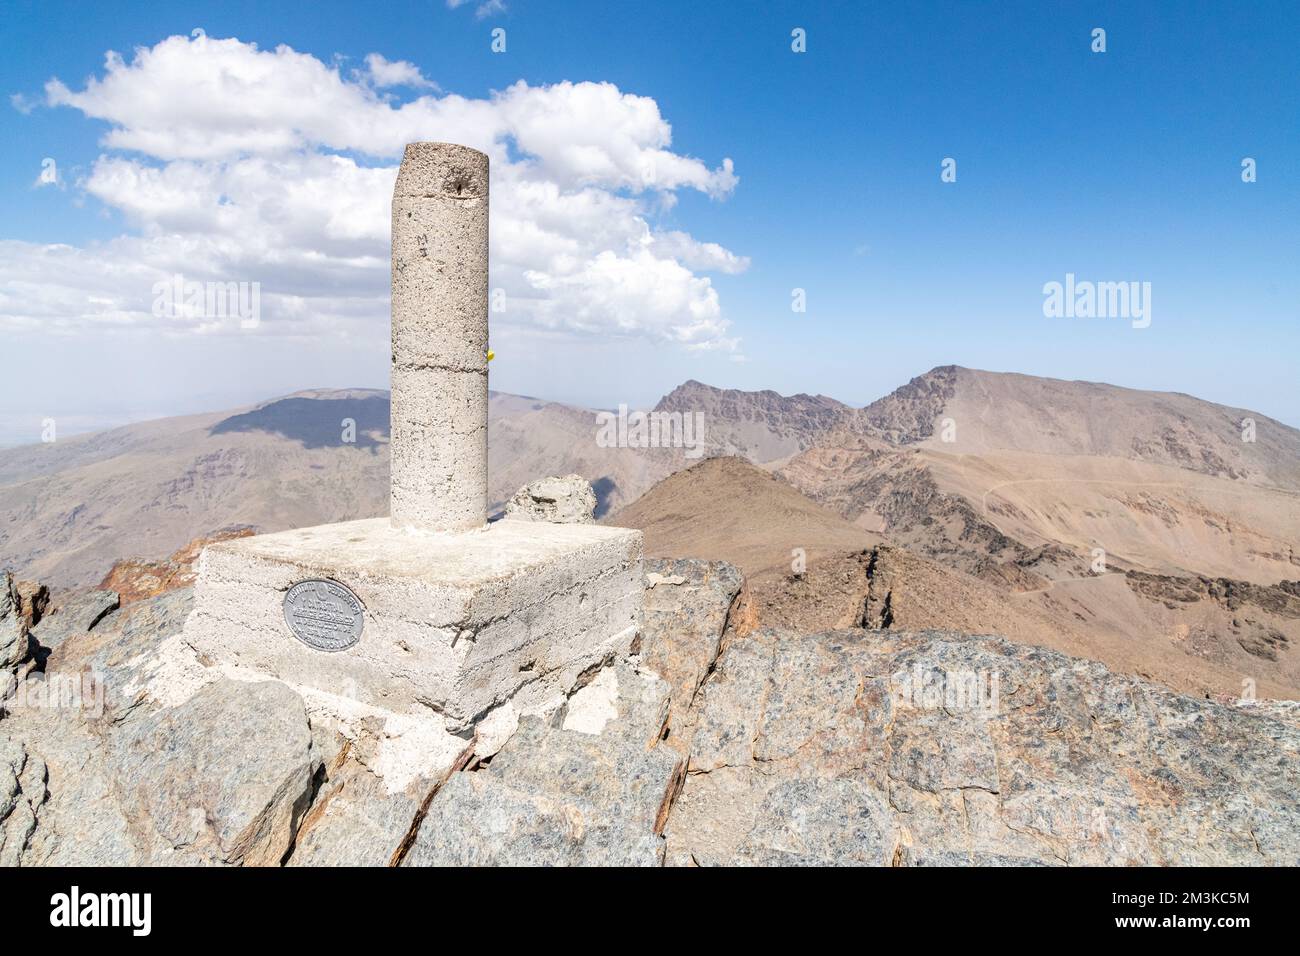 Un point de passage / trig à Pico Veleta dans la Sierra Nevada chaîne de montagnes en Andalousie, Espagne Banque D'Images